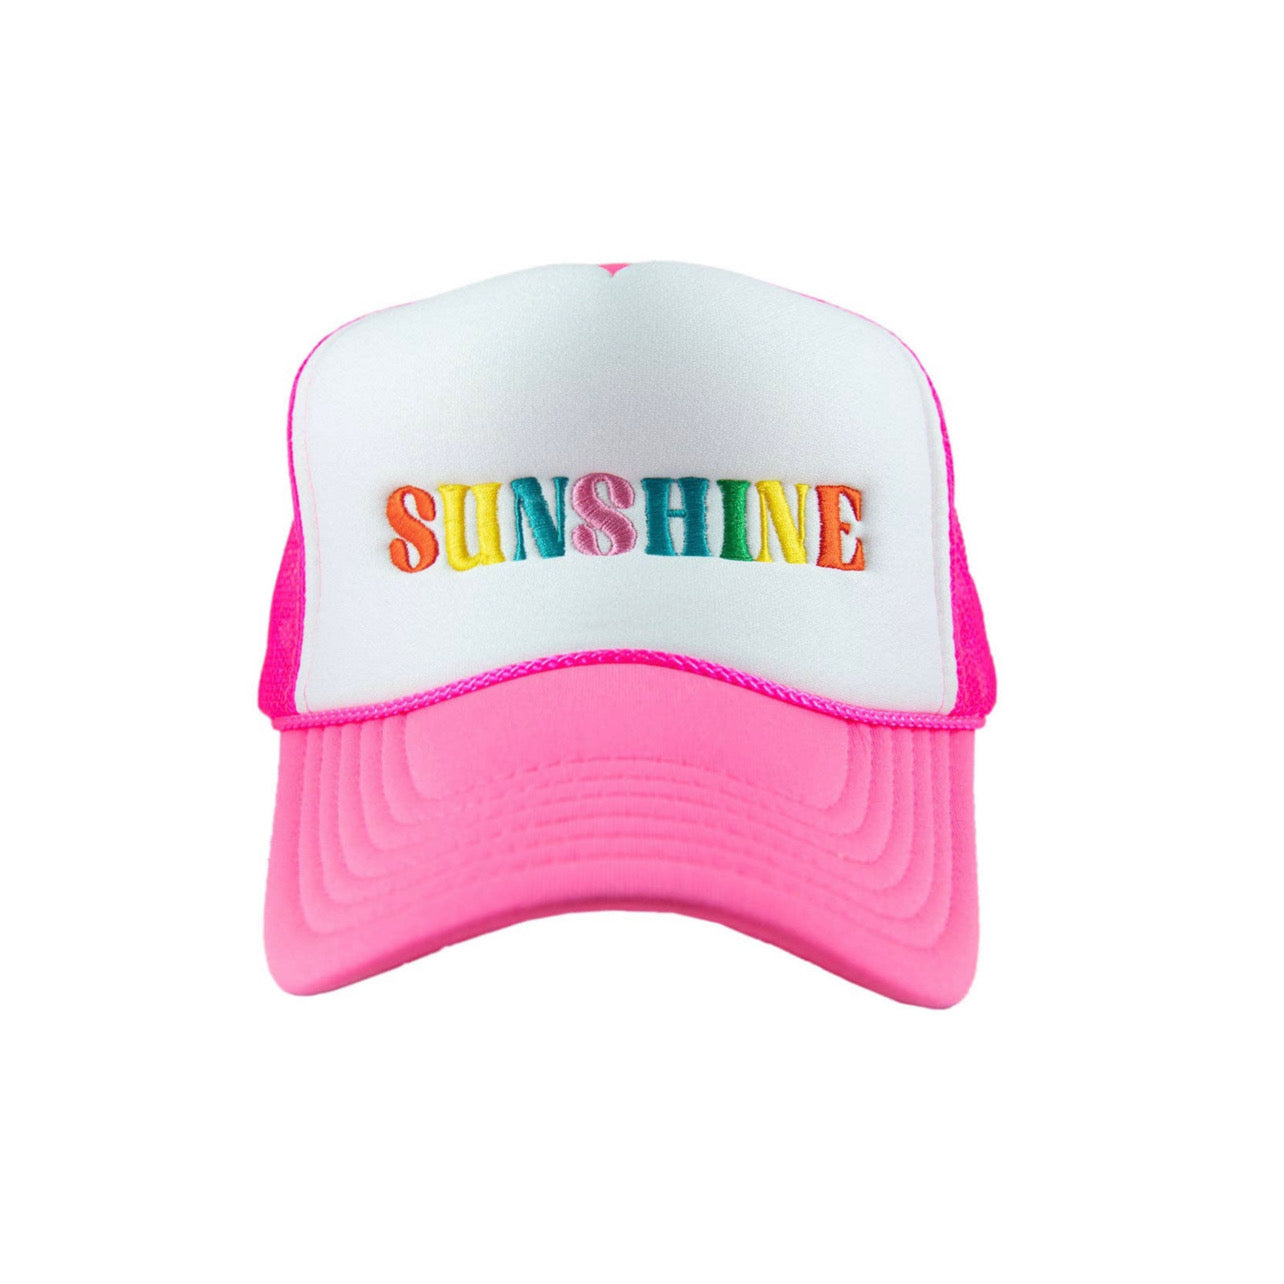 SUNSHINE NEON PINK TRUCKER HAT